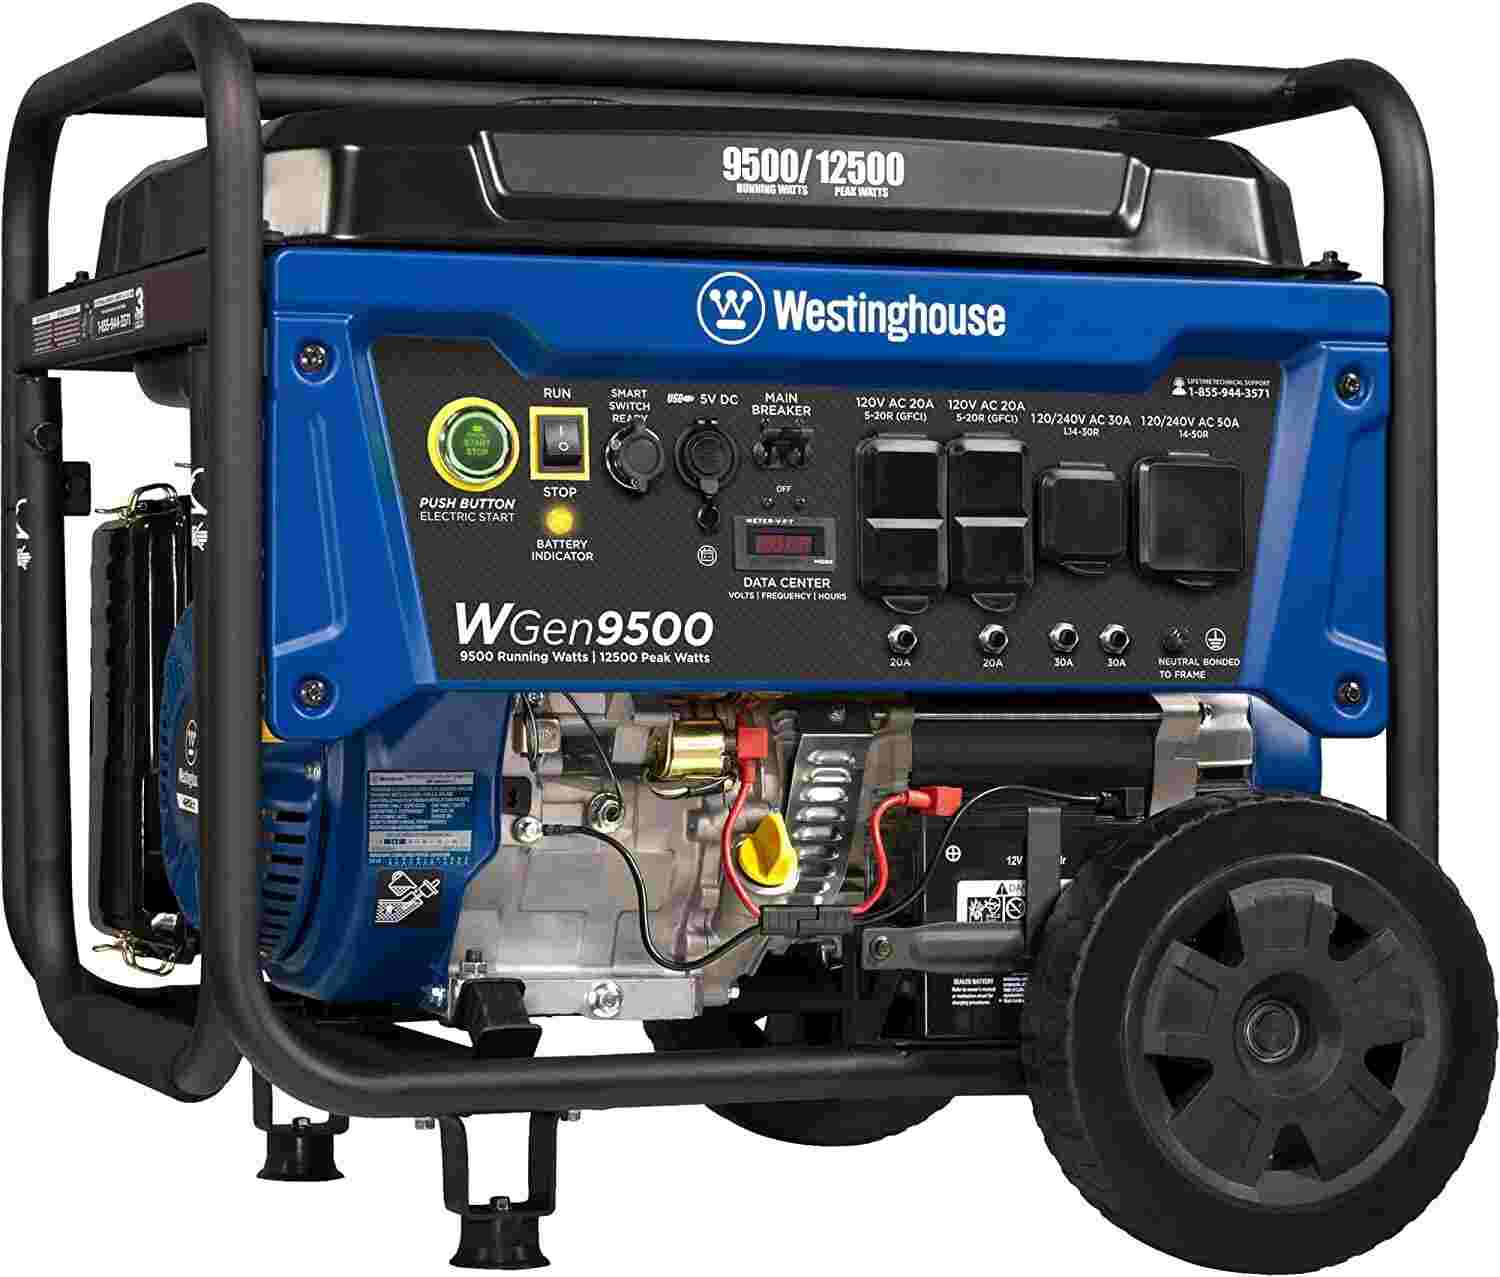 Westinghouse Wgen9500 RV Generator